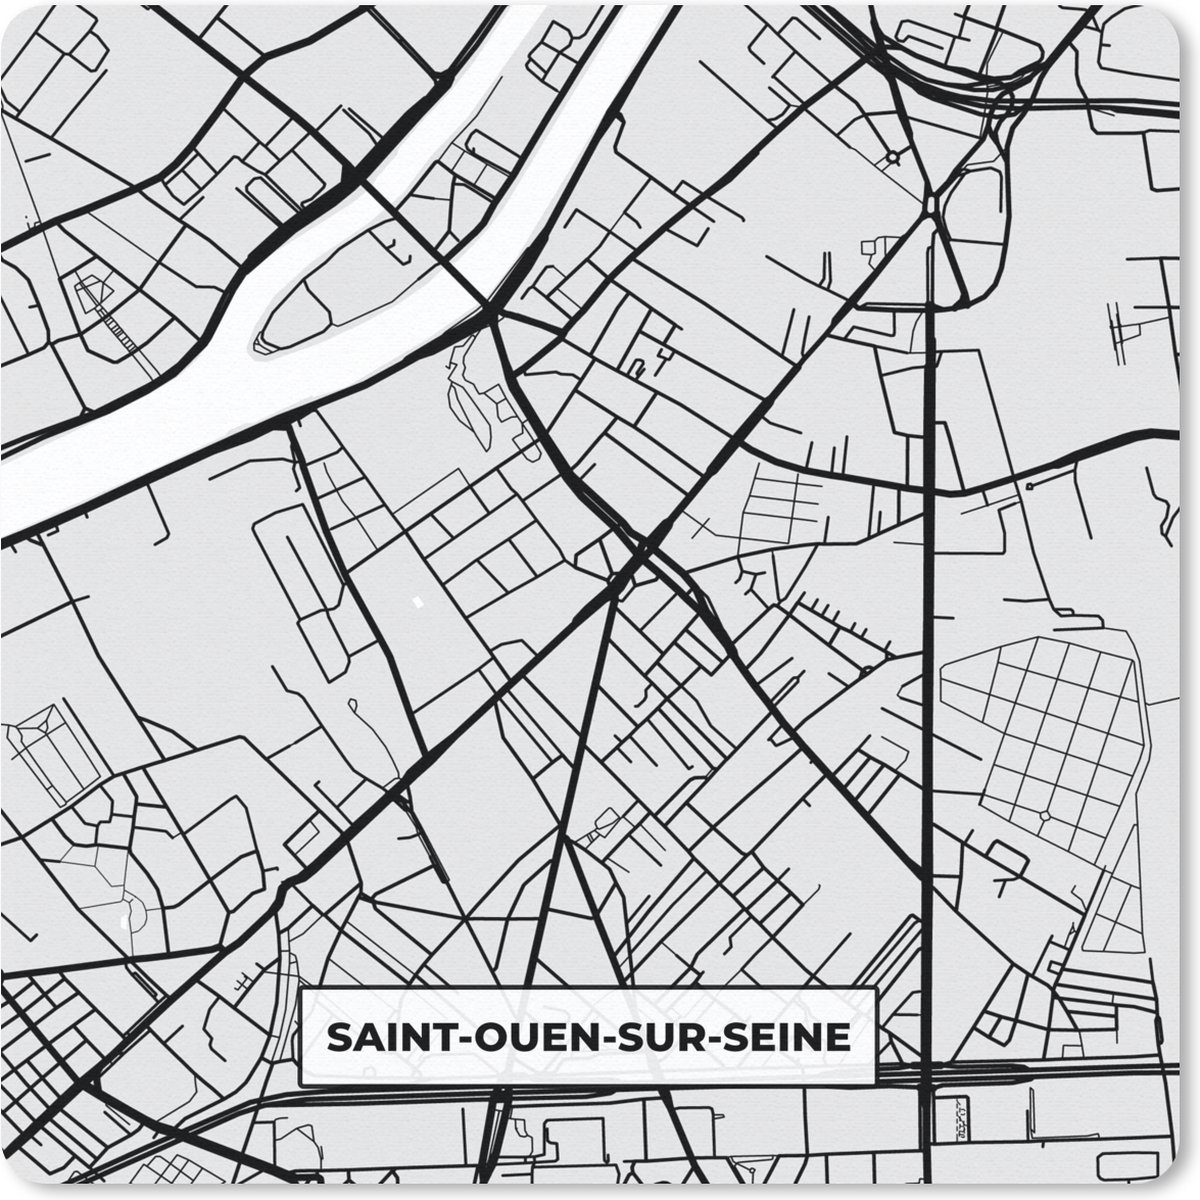 Muismat - Mousepad - Plattegrond - Saint-Ouen-sur-Seine - Stadskaart - Kaart - Frankrijk - 30x30 cm - Muismatten